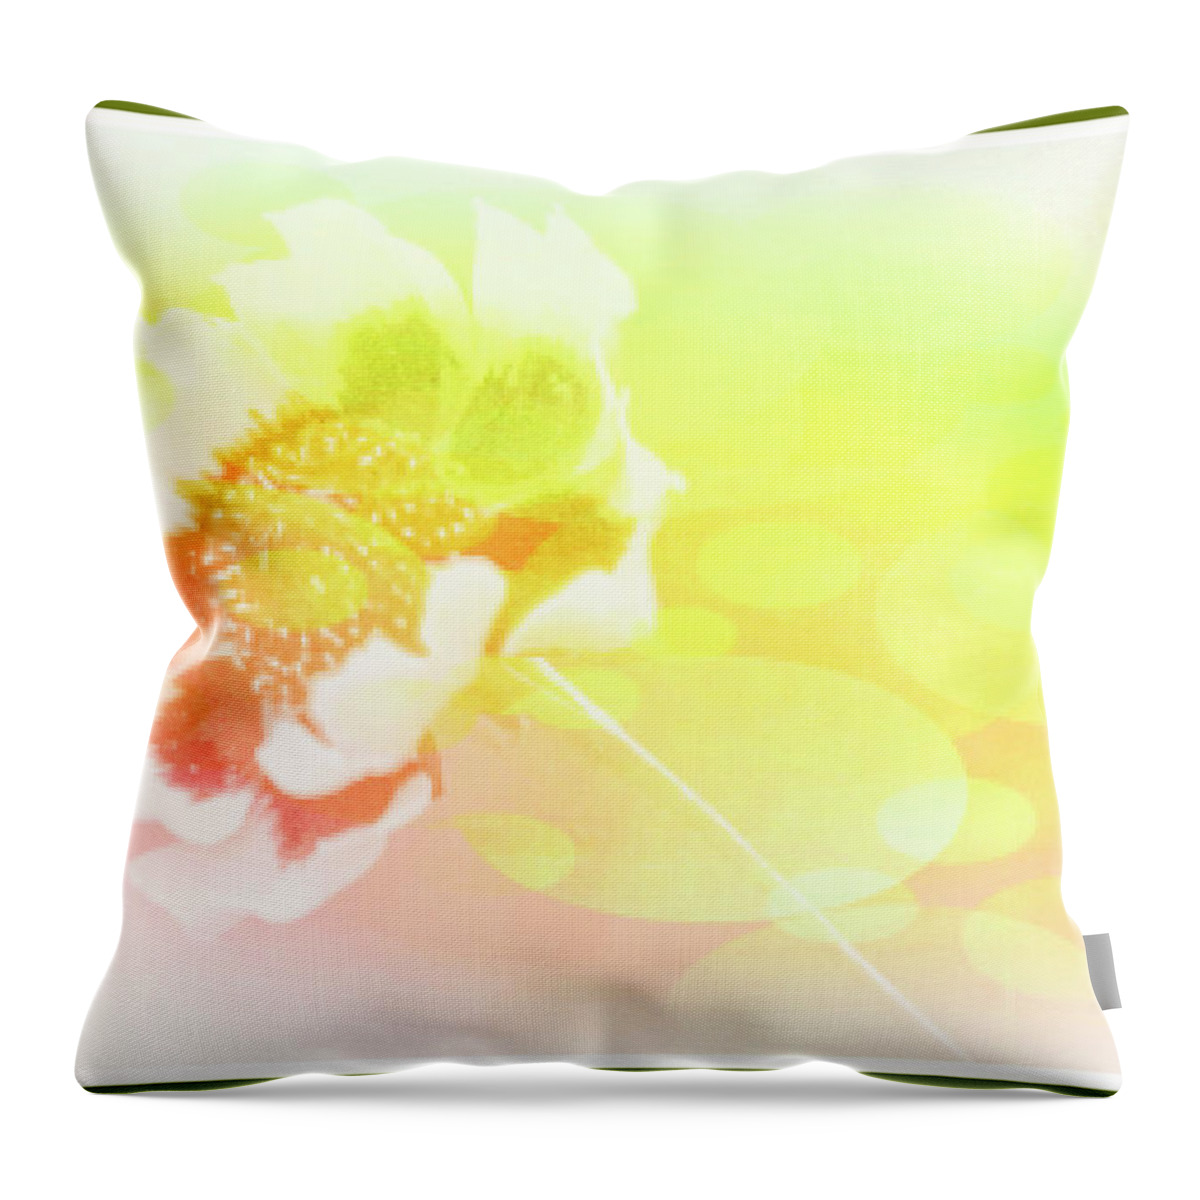 Garden Throw Pillow featuring the digital art Coreopsis Flower by A Macarthur Gurmankin